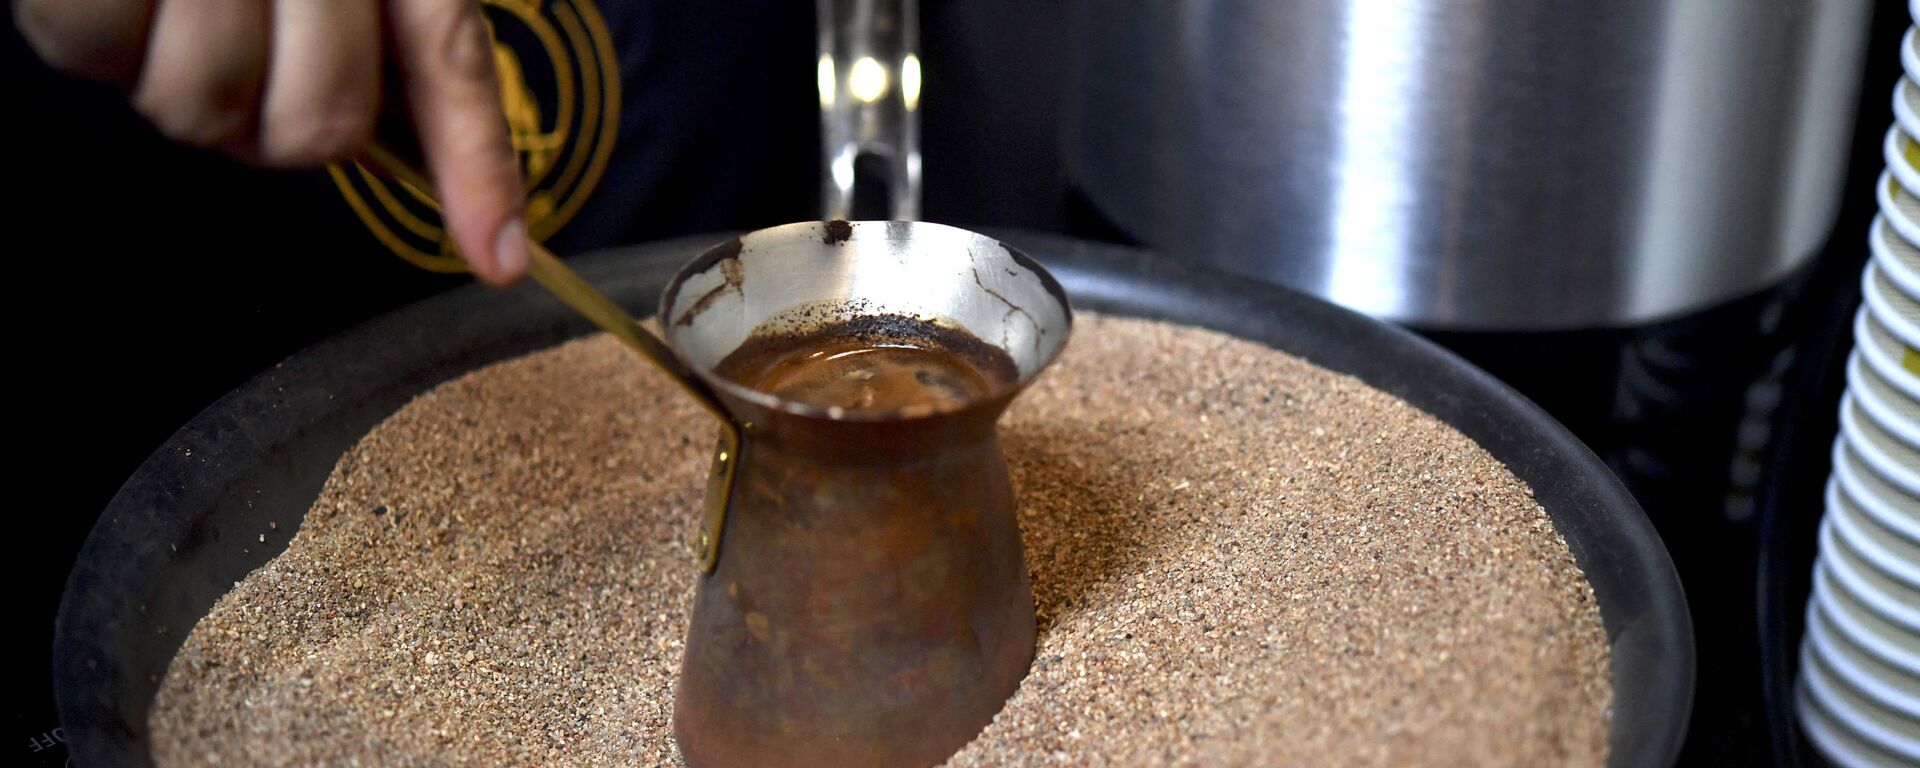 Мексиканский бариста готовит фирменный турецкий кофе в медном горшочке на горячем песке, Мехико - Sputnik Армения, 1920, 22.07.2021